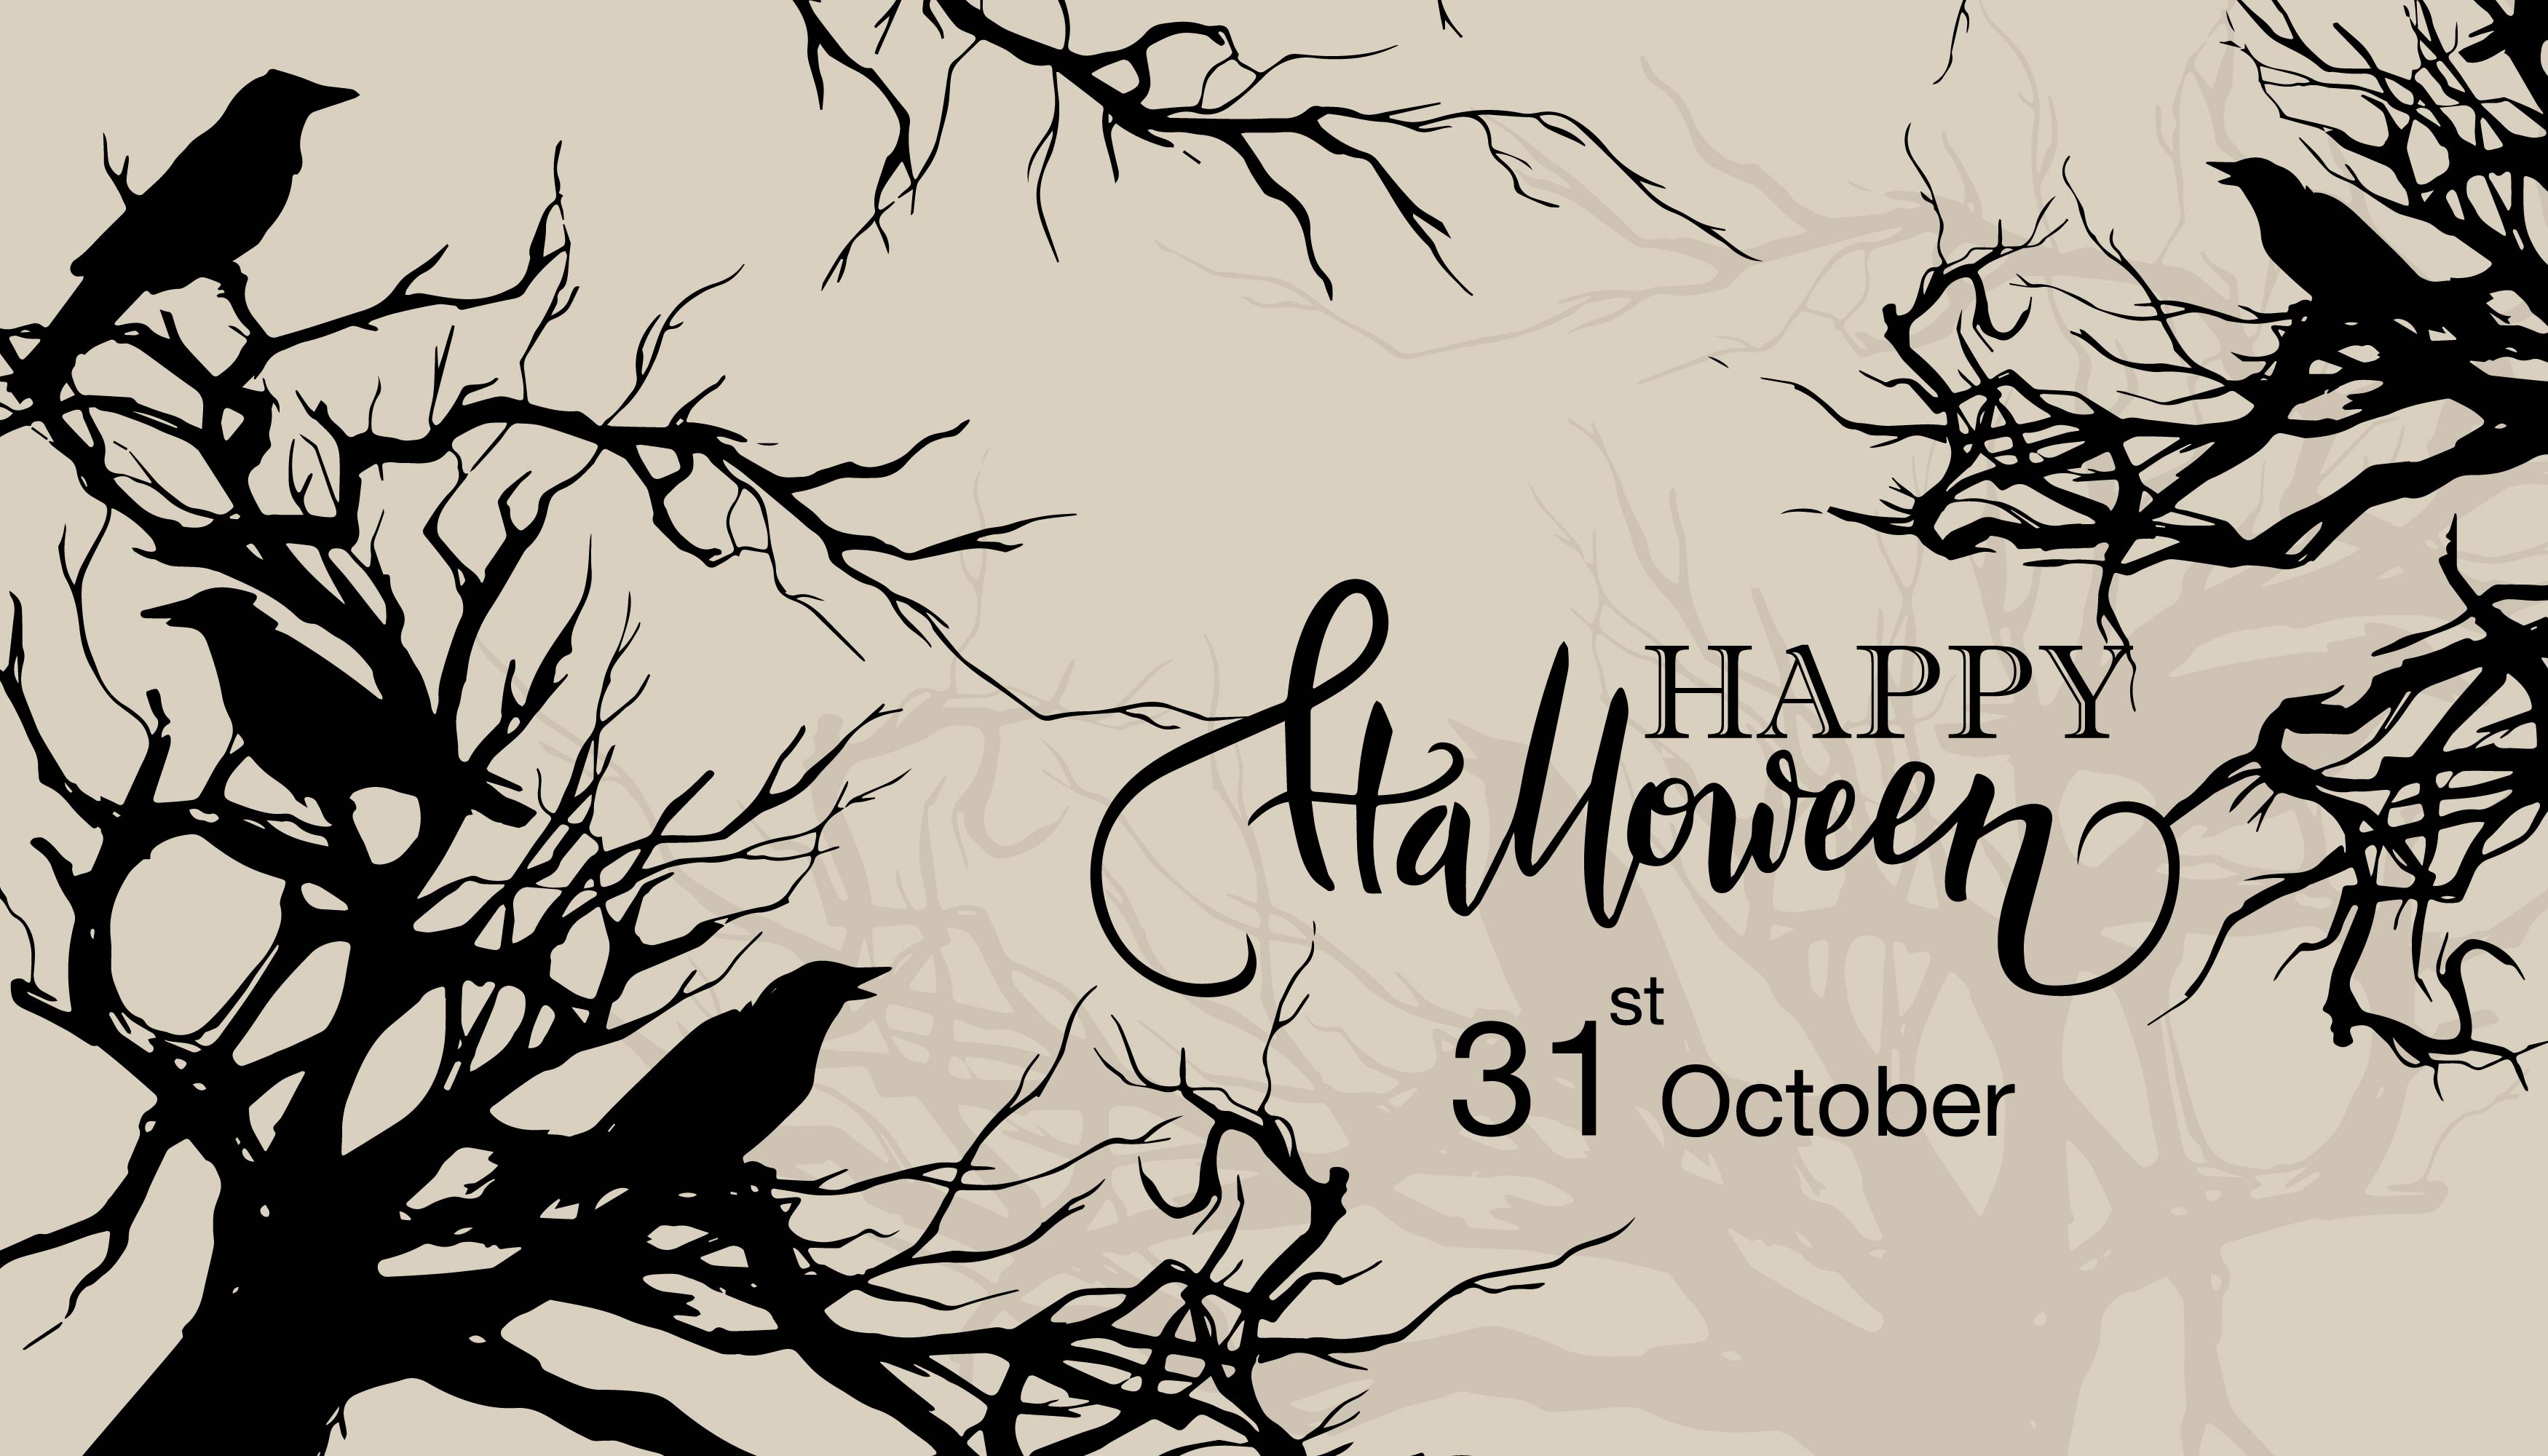 Happy halloween albero morto e uccelli silhouette design 1410717 - Scarica  Immagini Vettoriali Gratis, Grafica Vettoriale, e Disegno Modelli